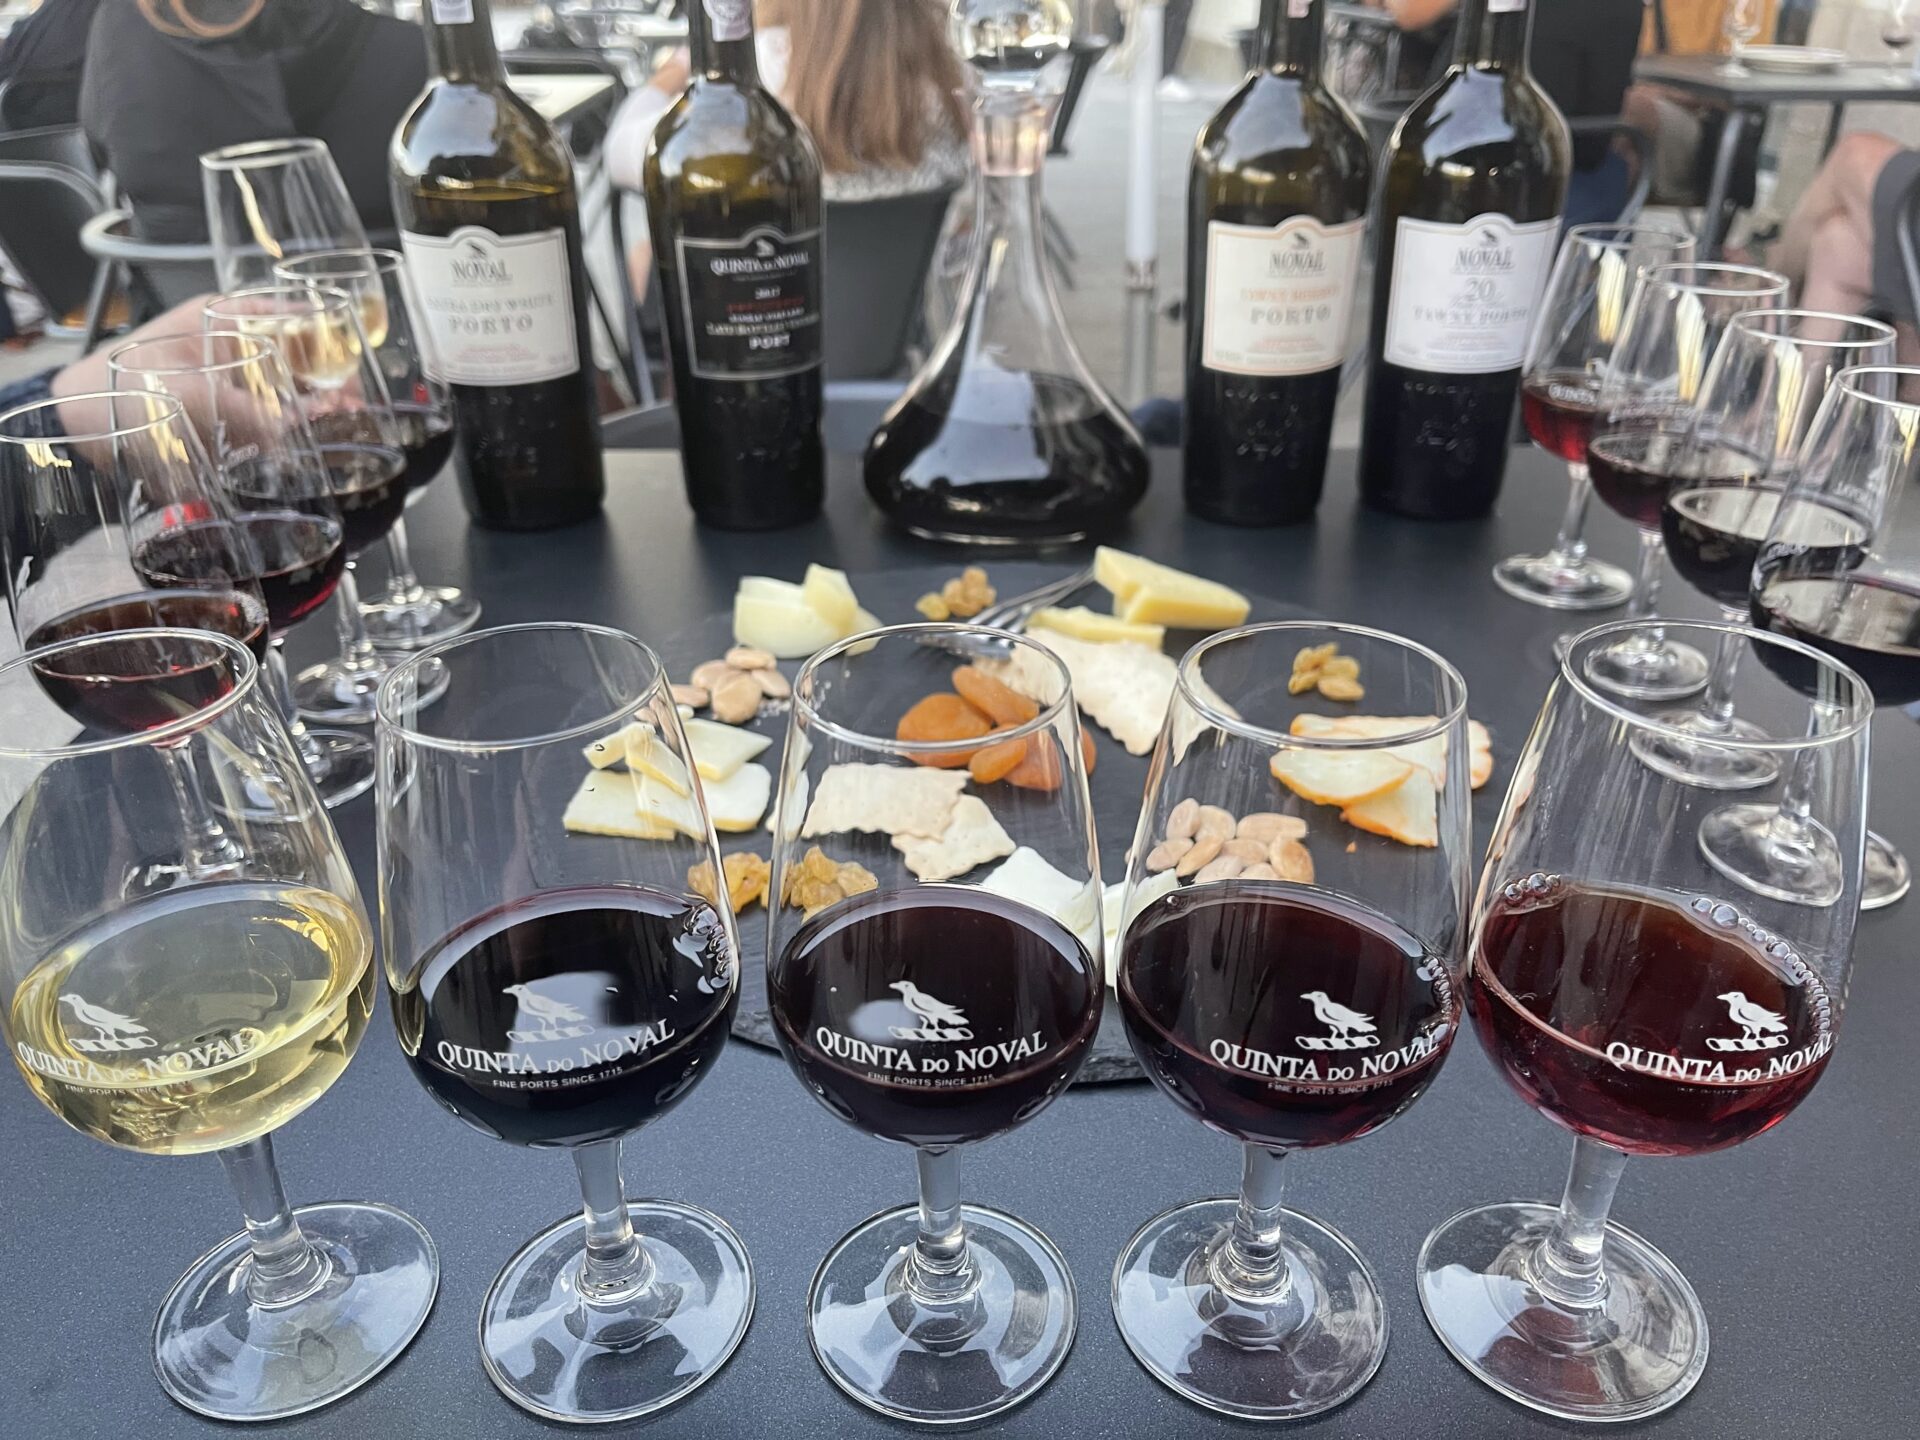 vinhos quinta do noval port wine tasting in porto - Ultimate Guide to Port Tasting in Porto, Portugal